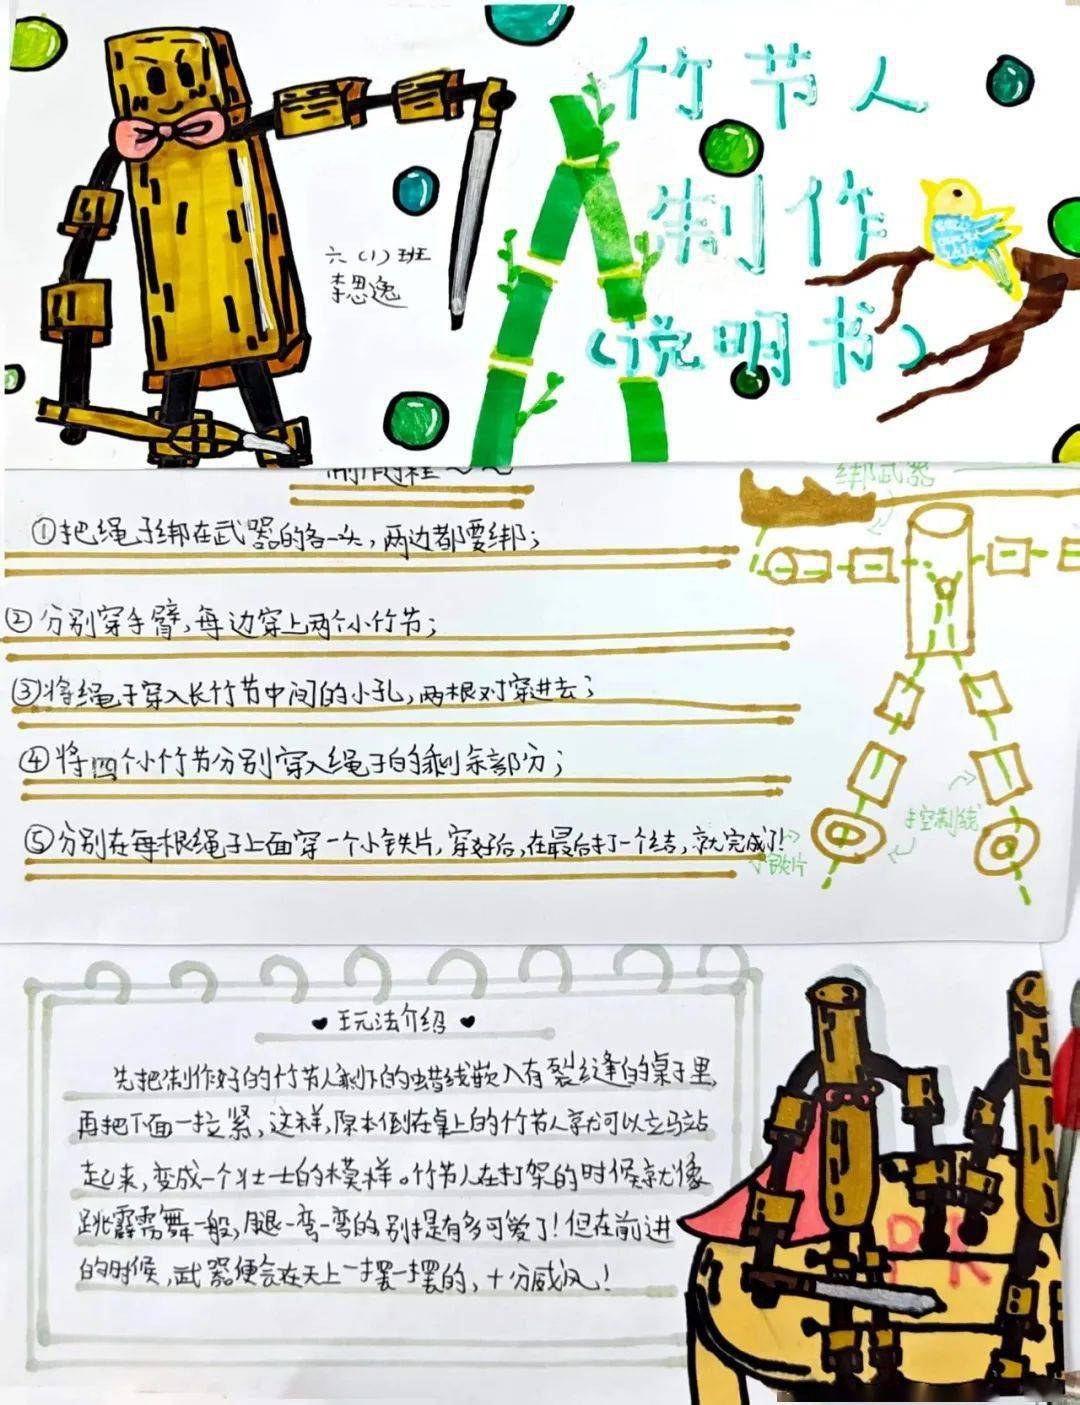 竹节人的写作背景资料图片